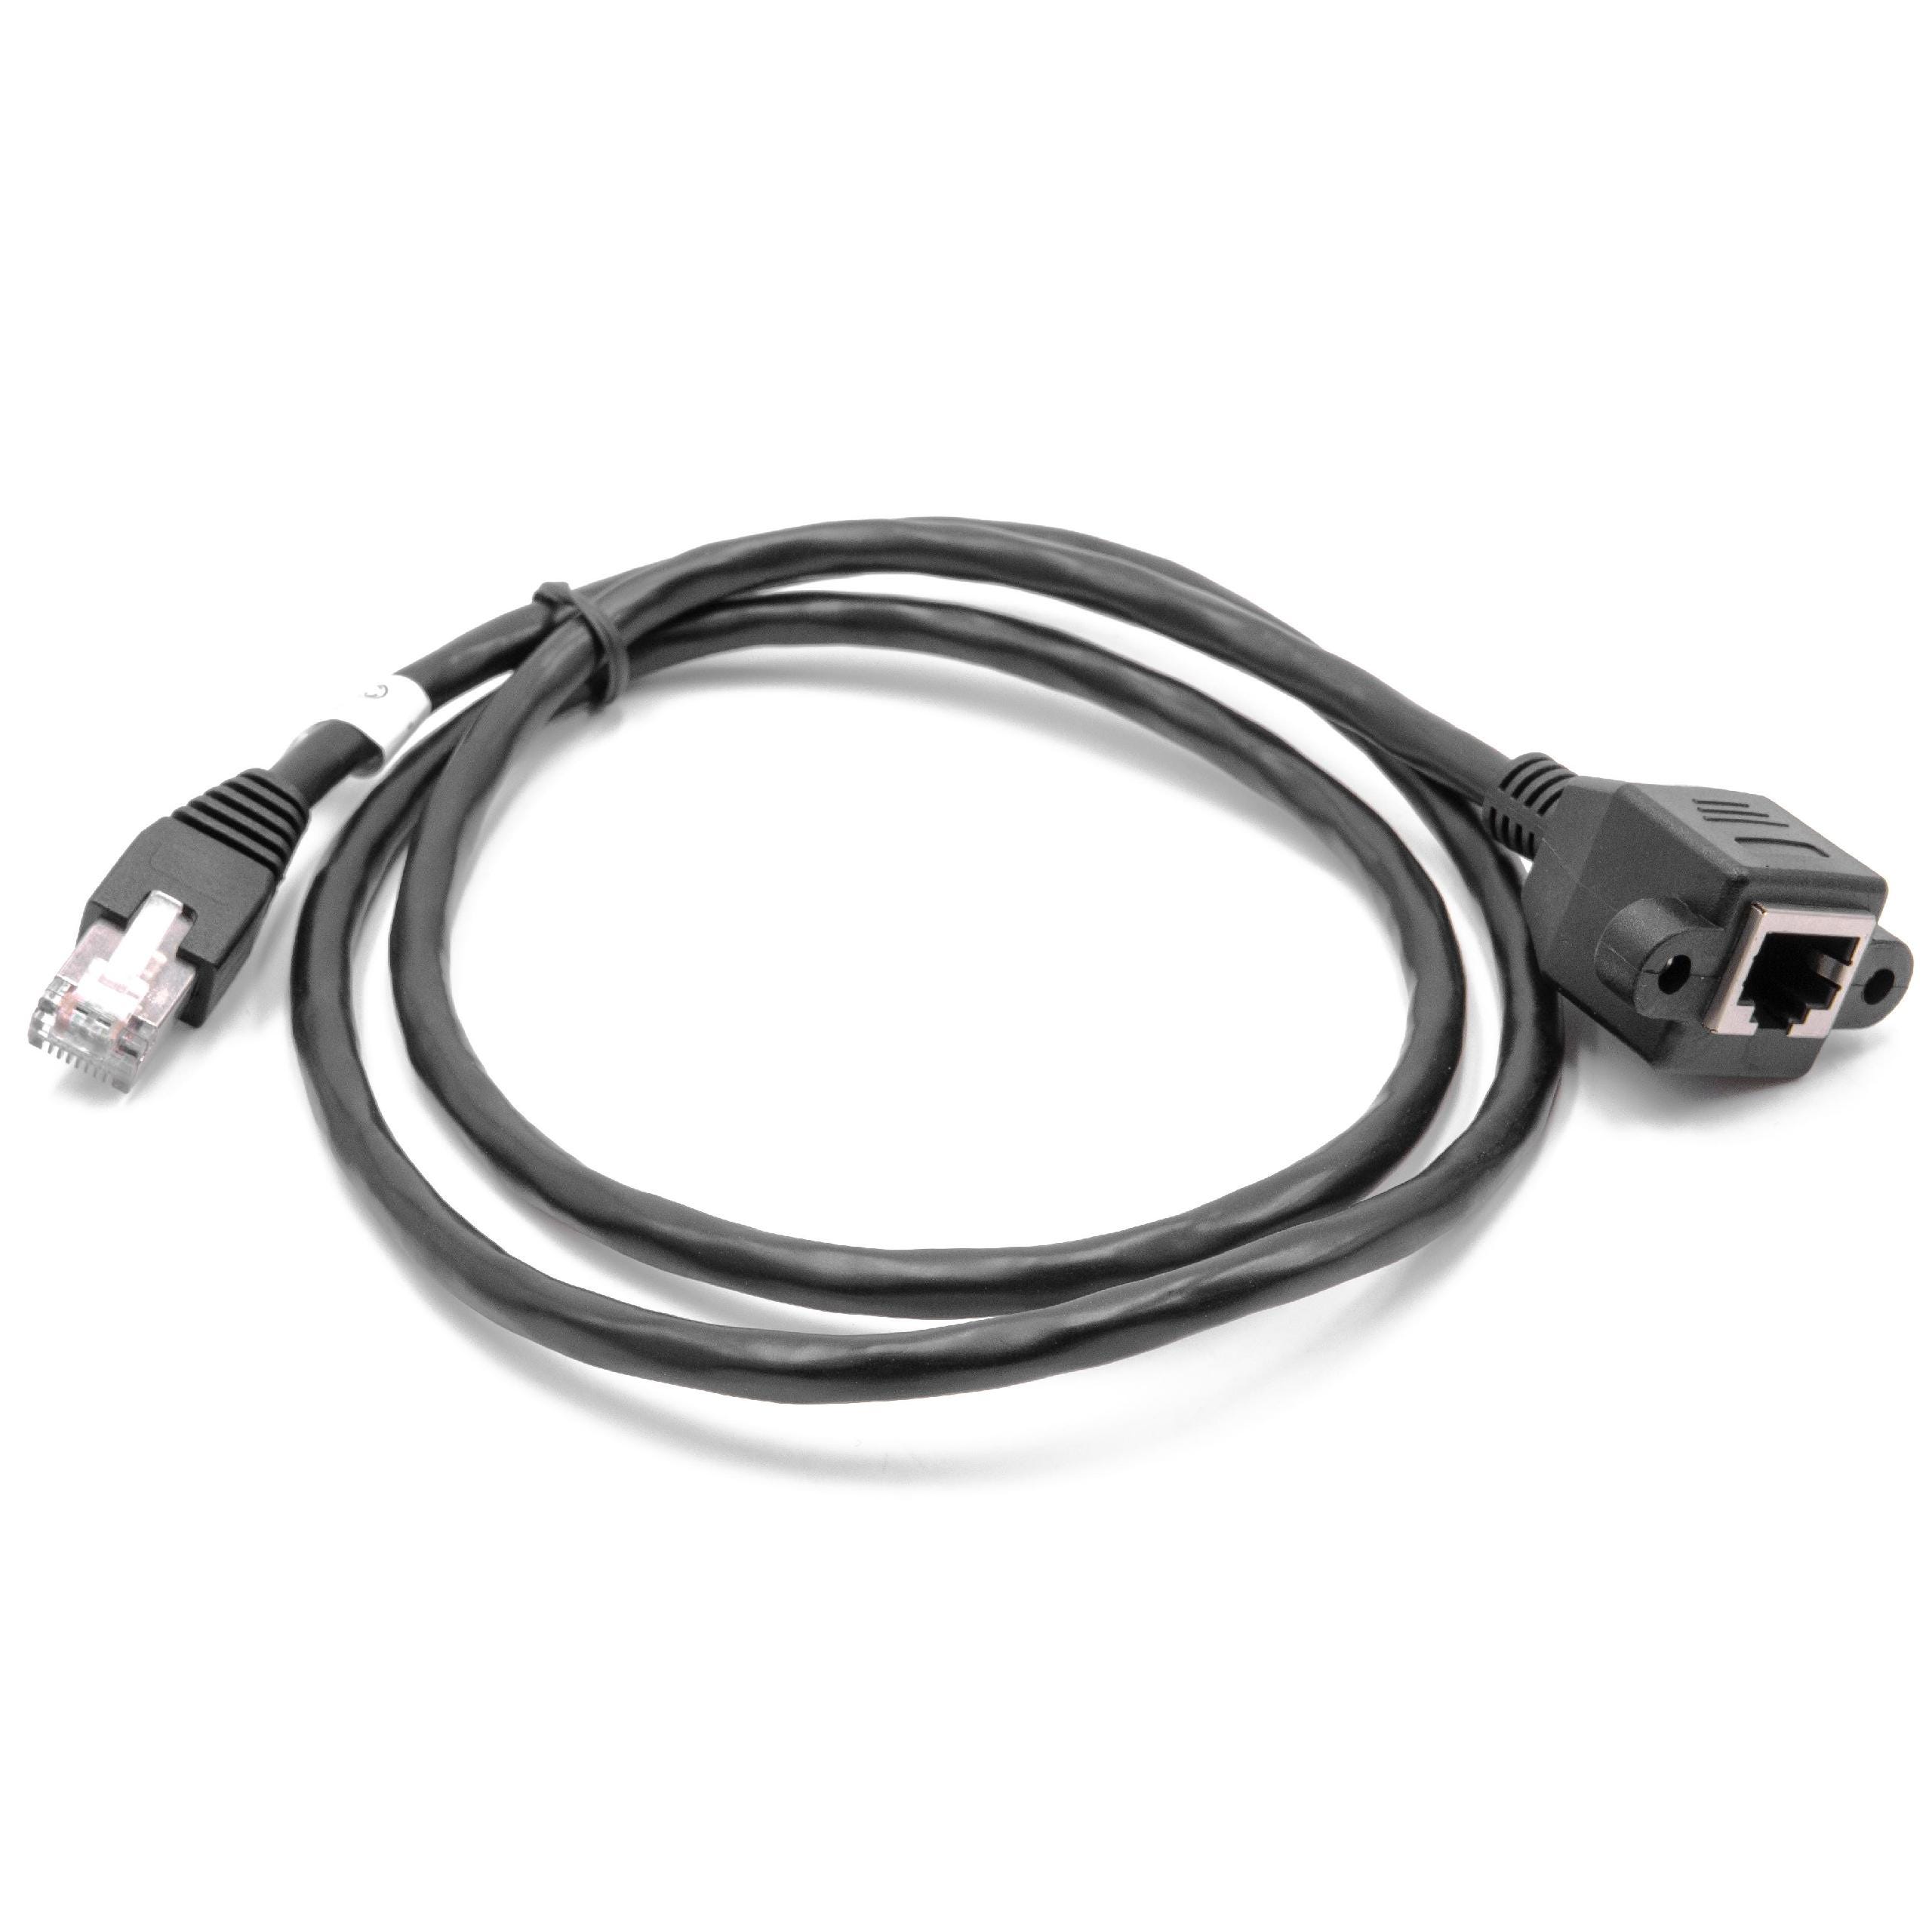 Cable USB A Male/Femelle, montage en panneau